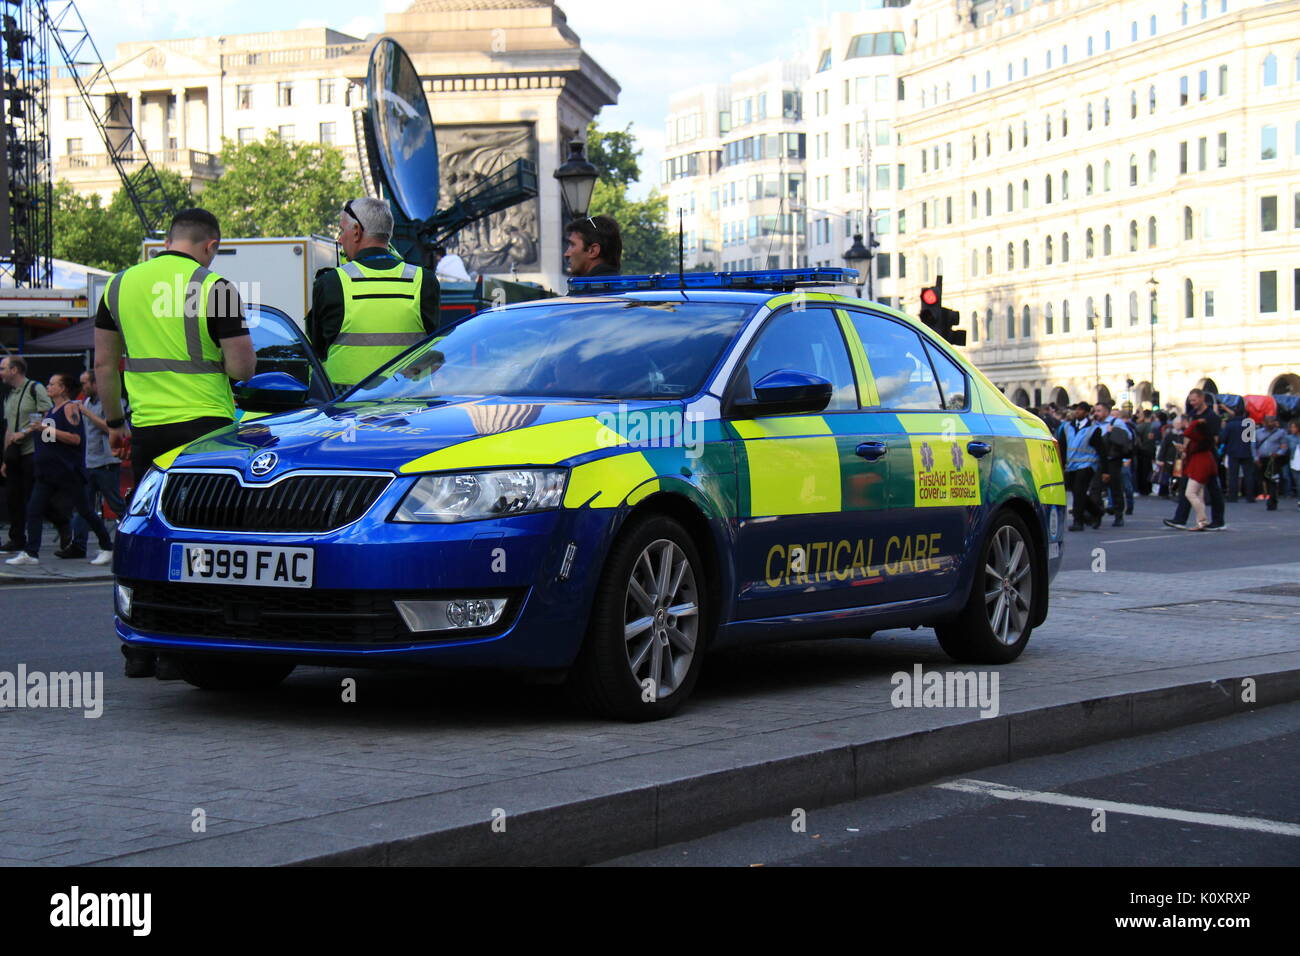 Primeros Auxilios Ltd Critical Care respuesta coche aparcado durante la F1 en directo evento de Londres Foto de stock